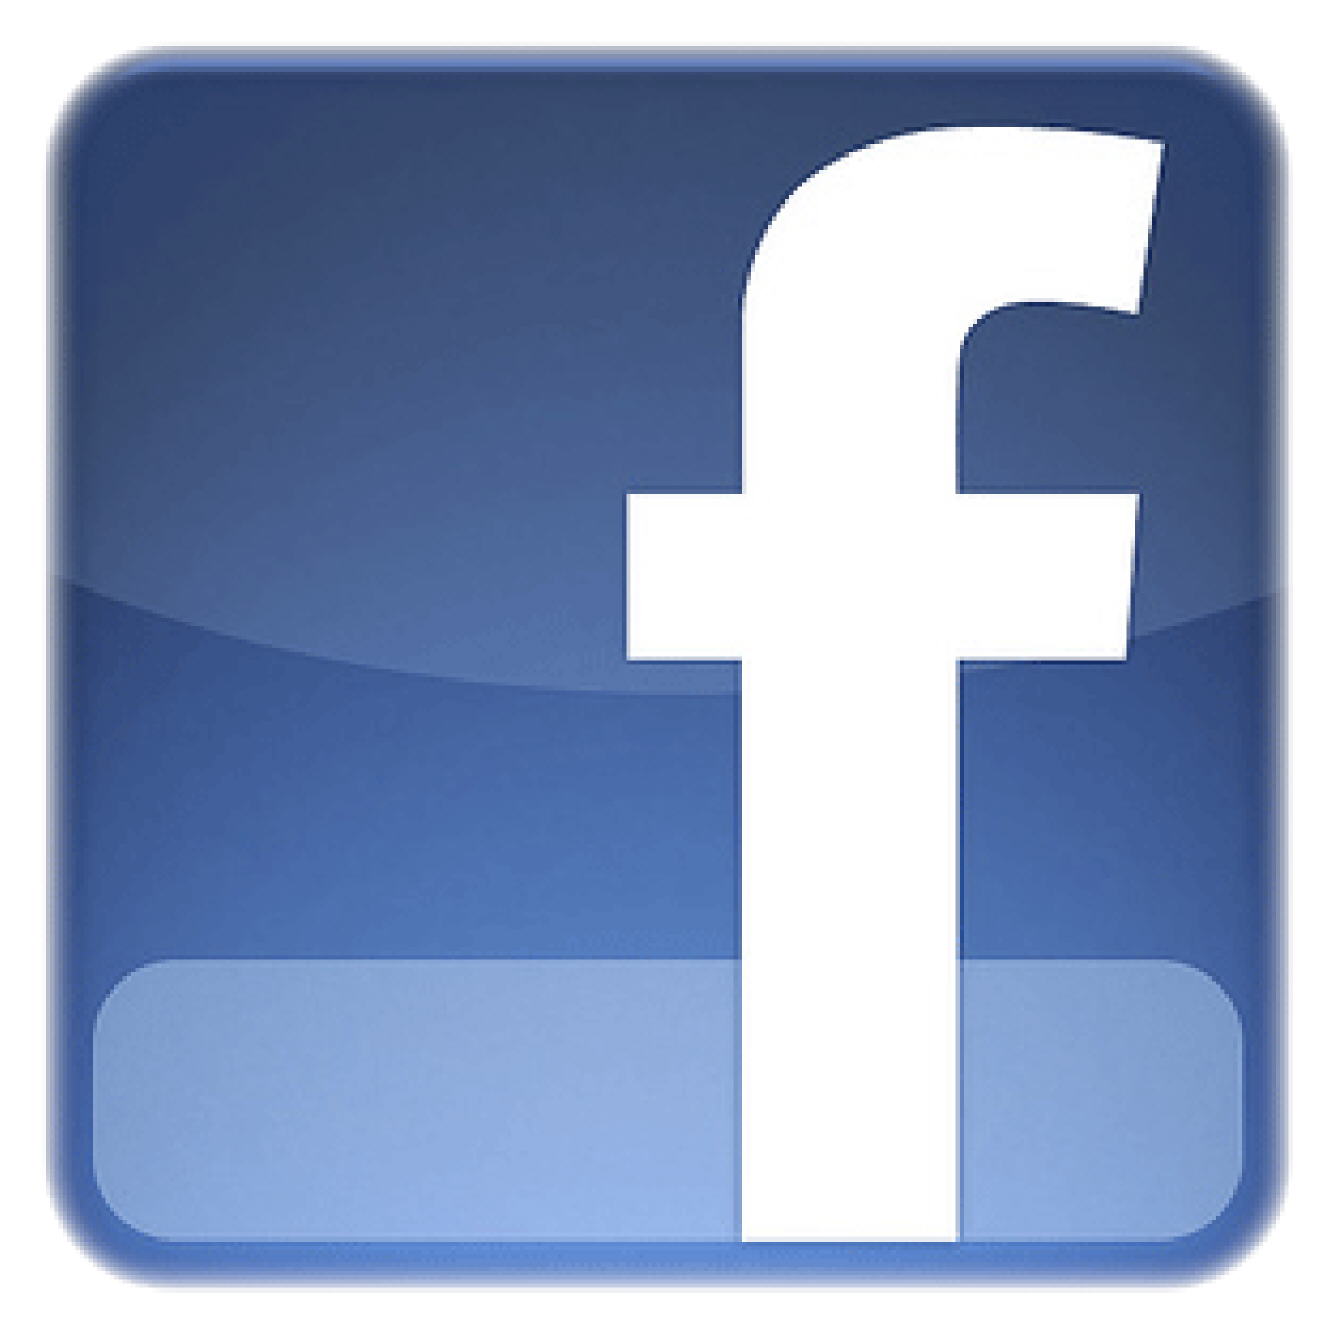 facebook logo 2